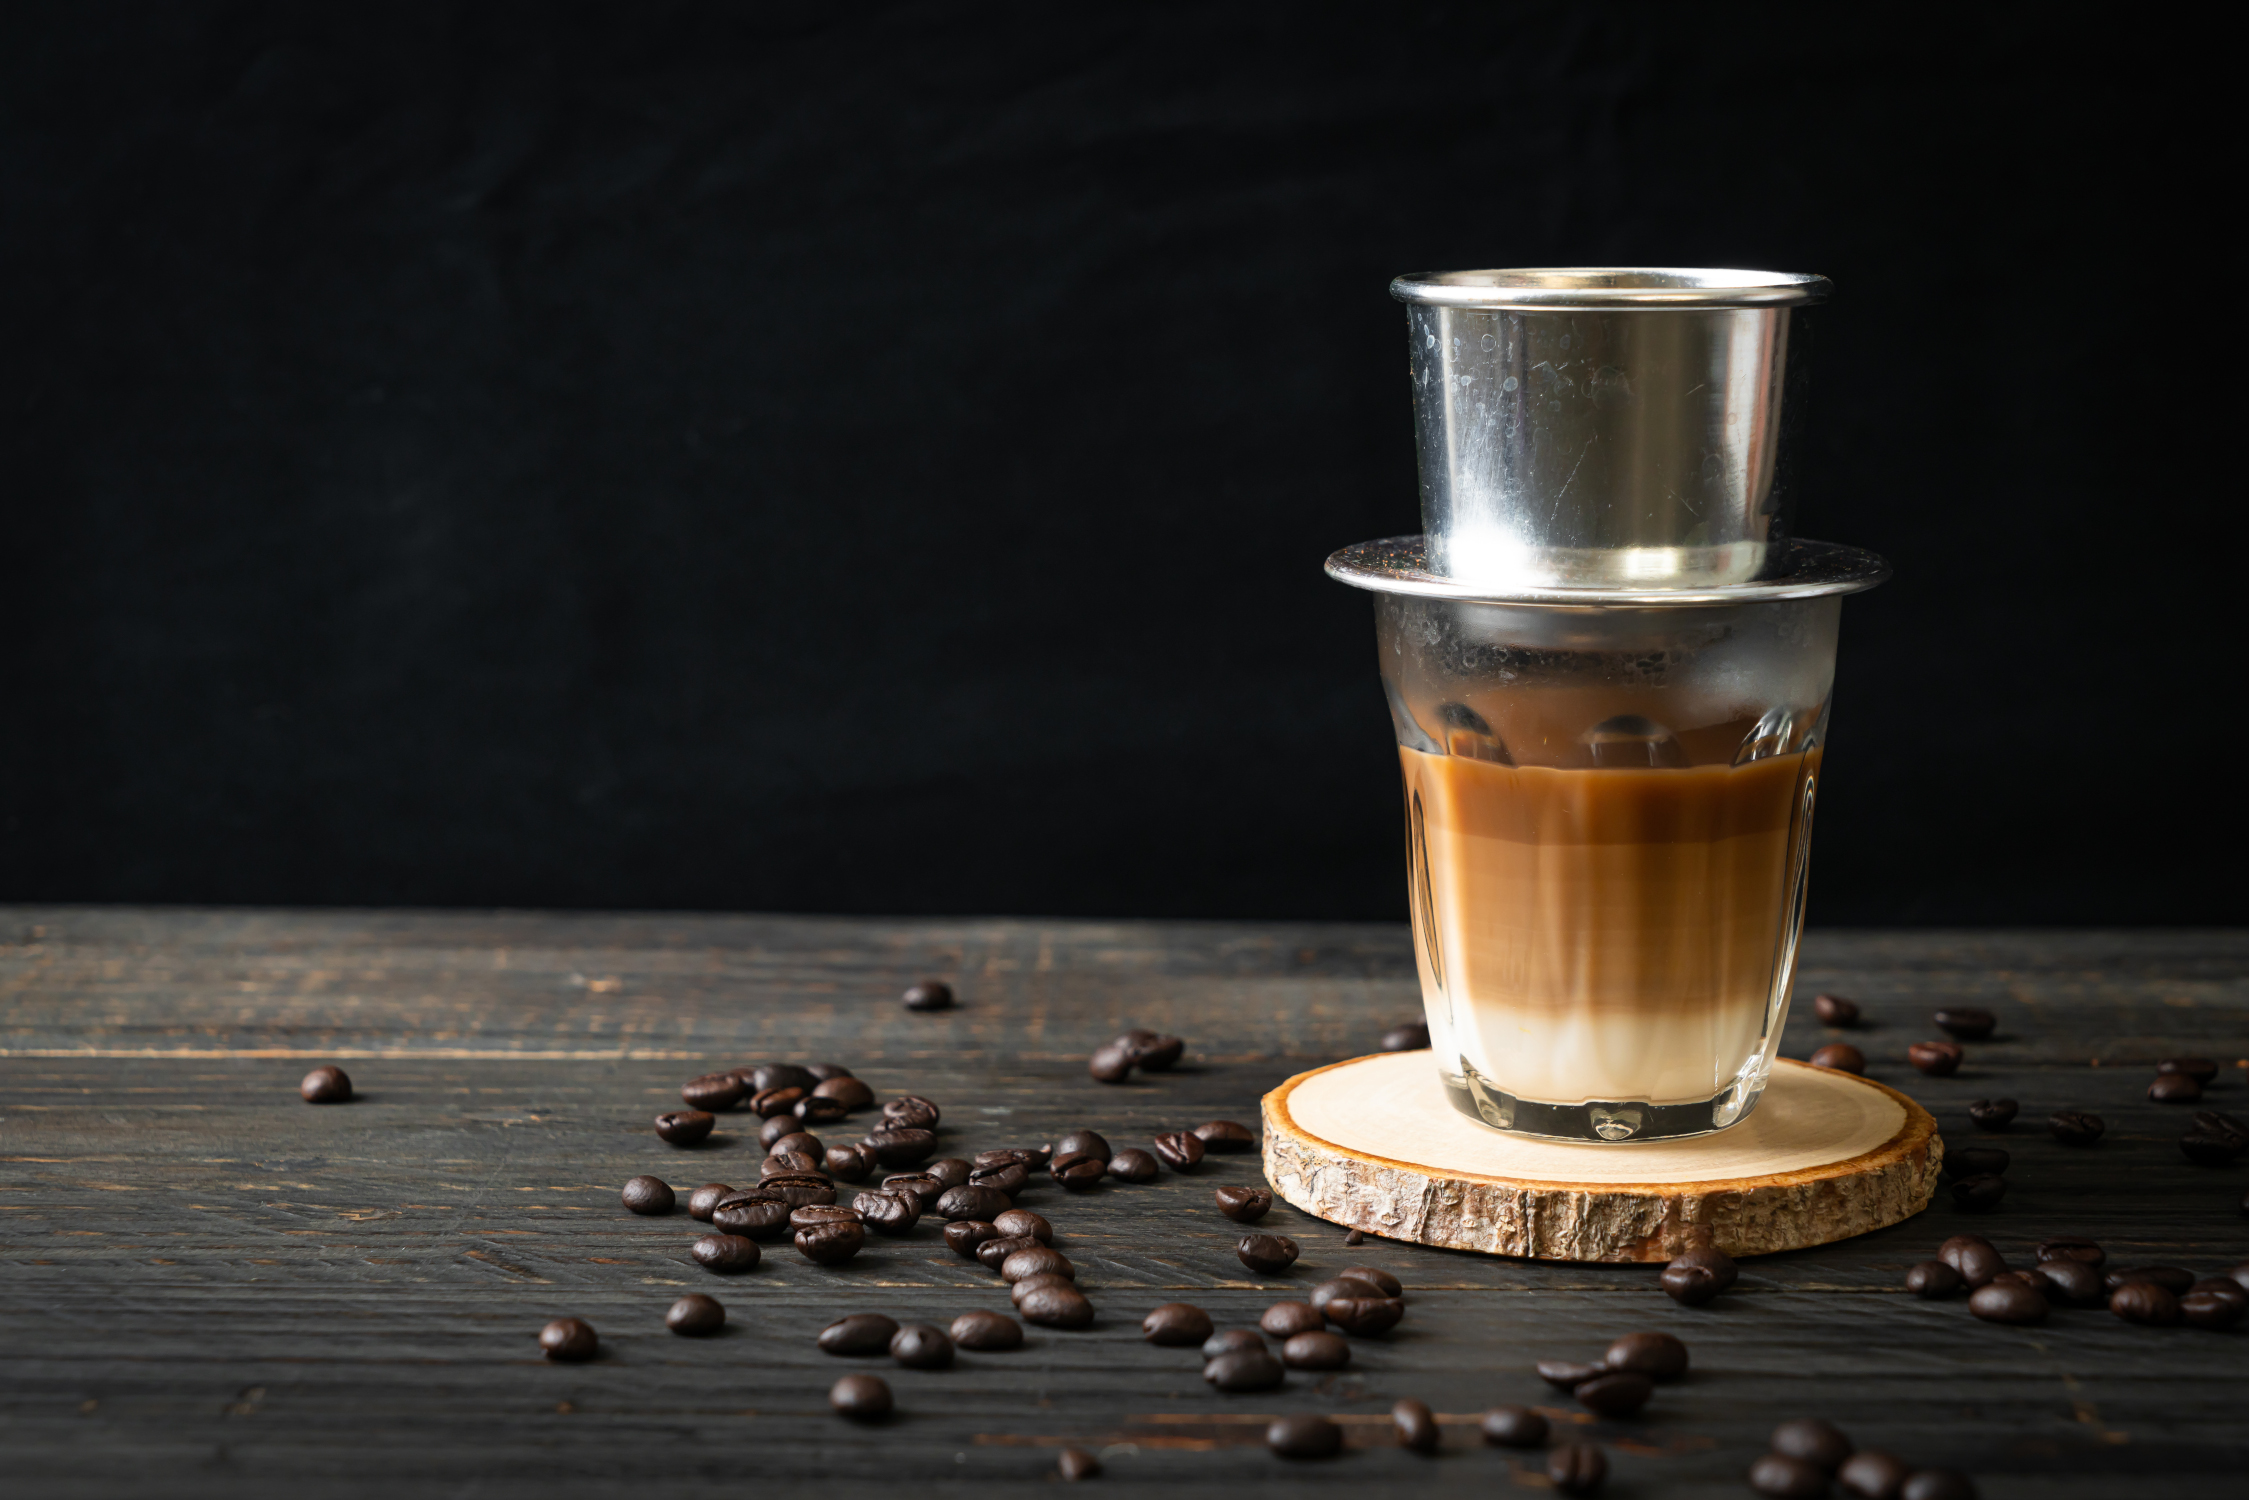 Kawa po wietnamsku to unikalny smak i aromat, przywodzący na myśl orientalne zakątki Azji